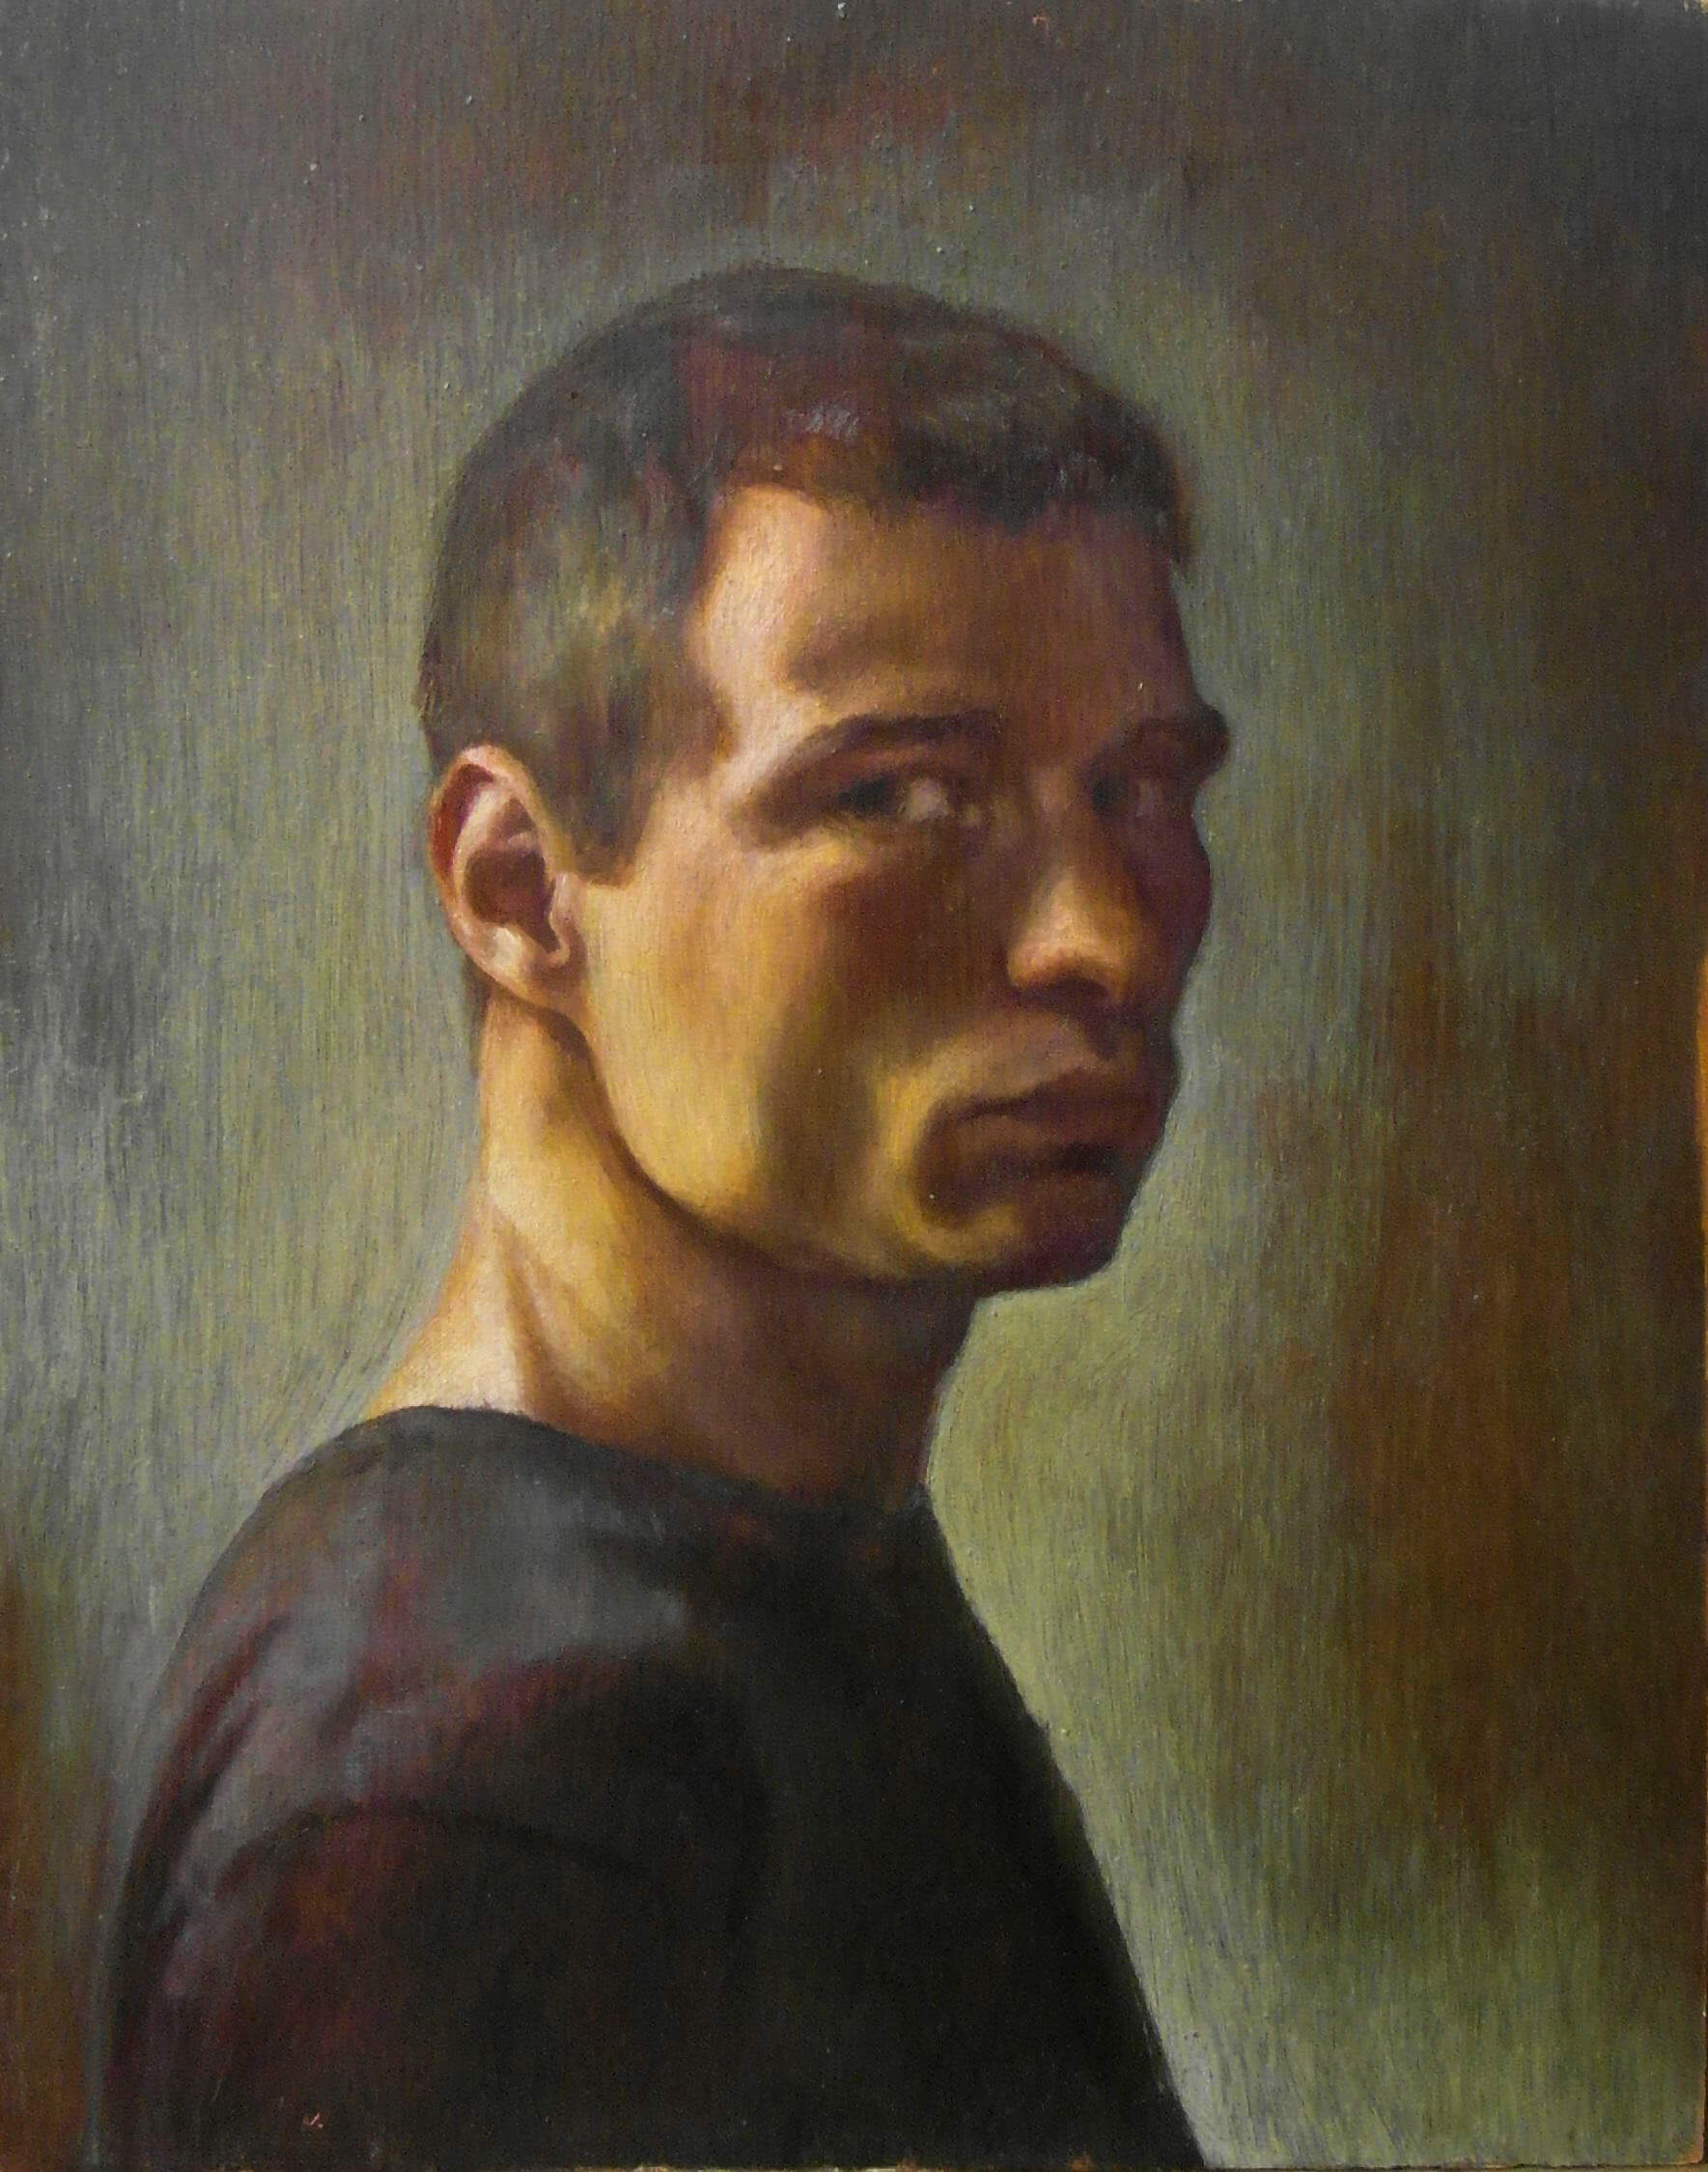 Self portrait on black oak, oil on black oak board, 20x30cm 2015